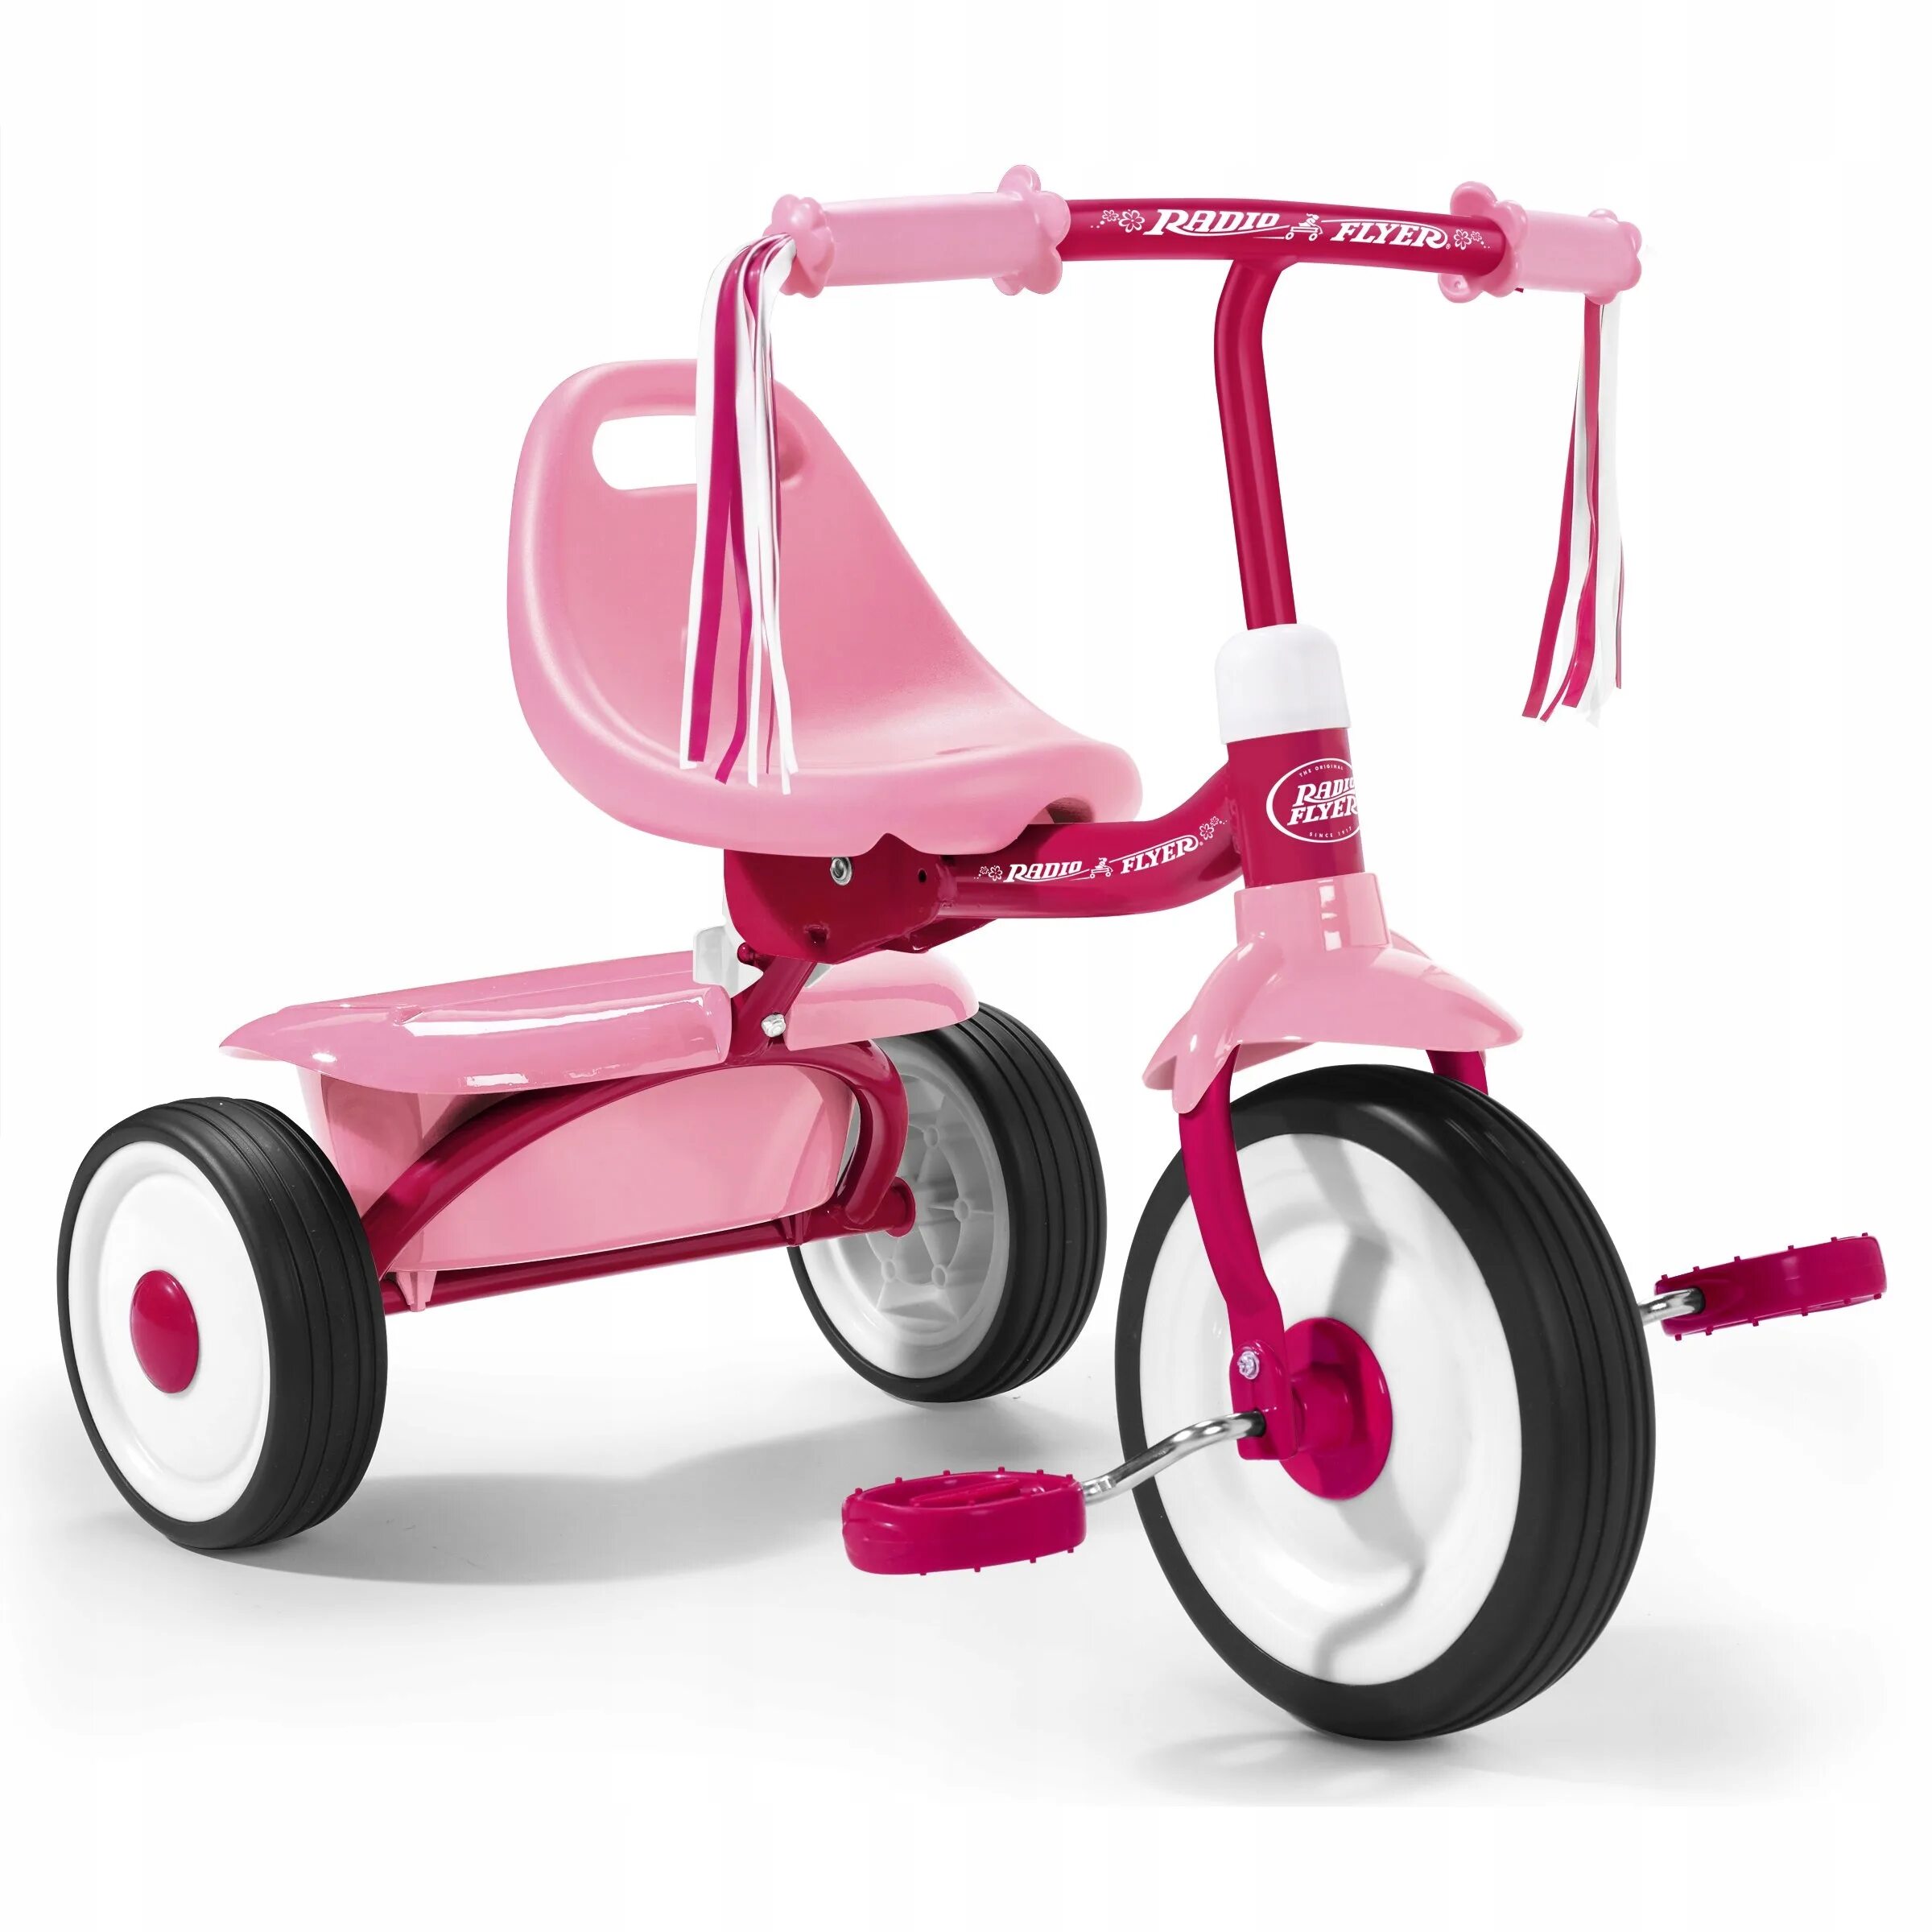 Какой велосипед купить ребенку в год. Radio Flyer велосипед трехколесный. Kids Trike велосипед трехколесный. Трехколесный велосипед Baby Land ts4237c-2рс. Велосипед TCV 083470 трехколесный.